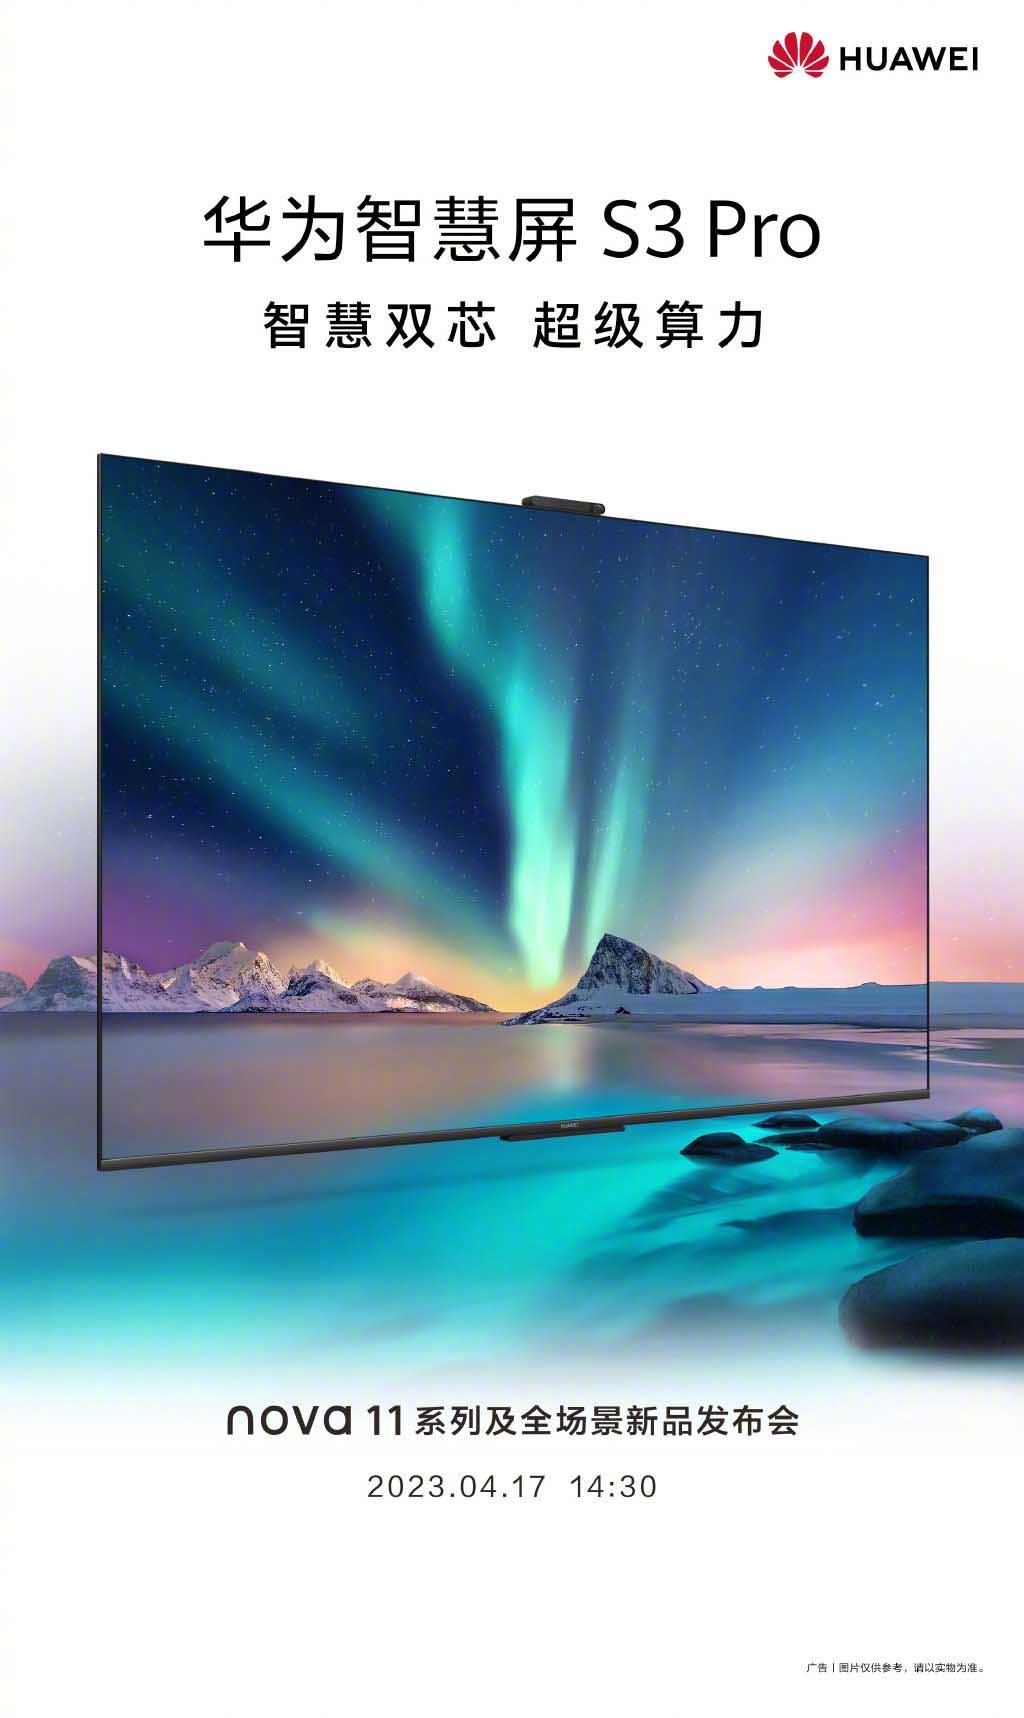 Huawei Smart Screen S3 Pro TV.jpg